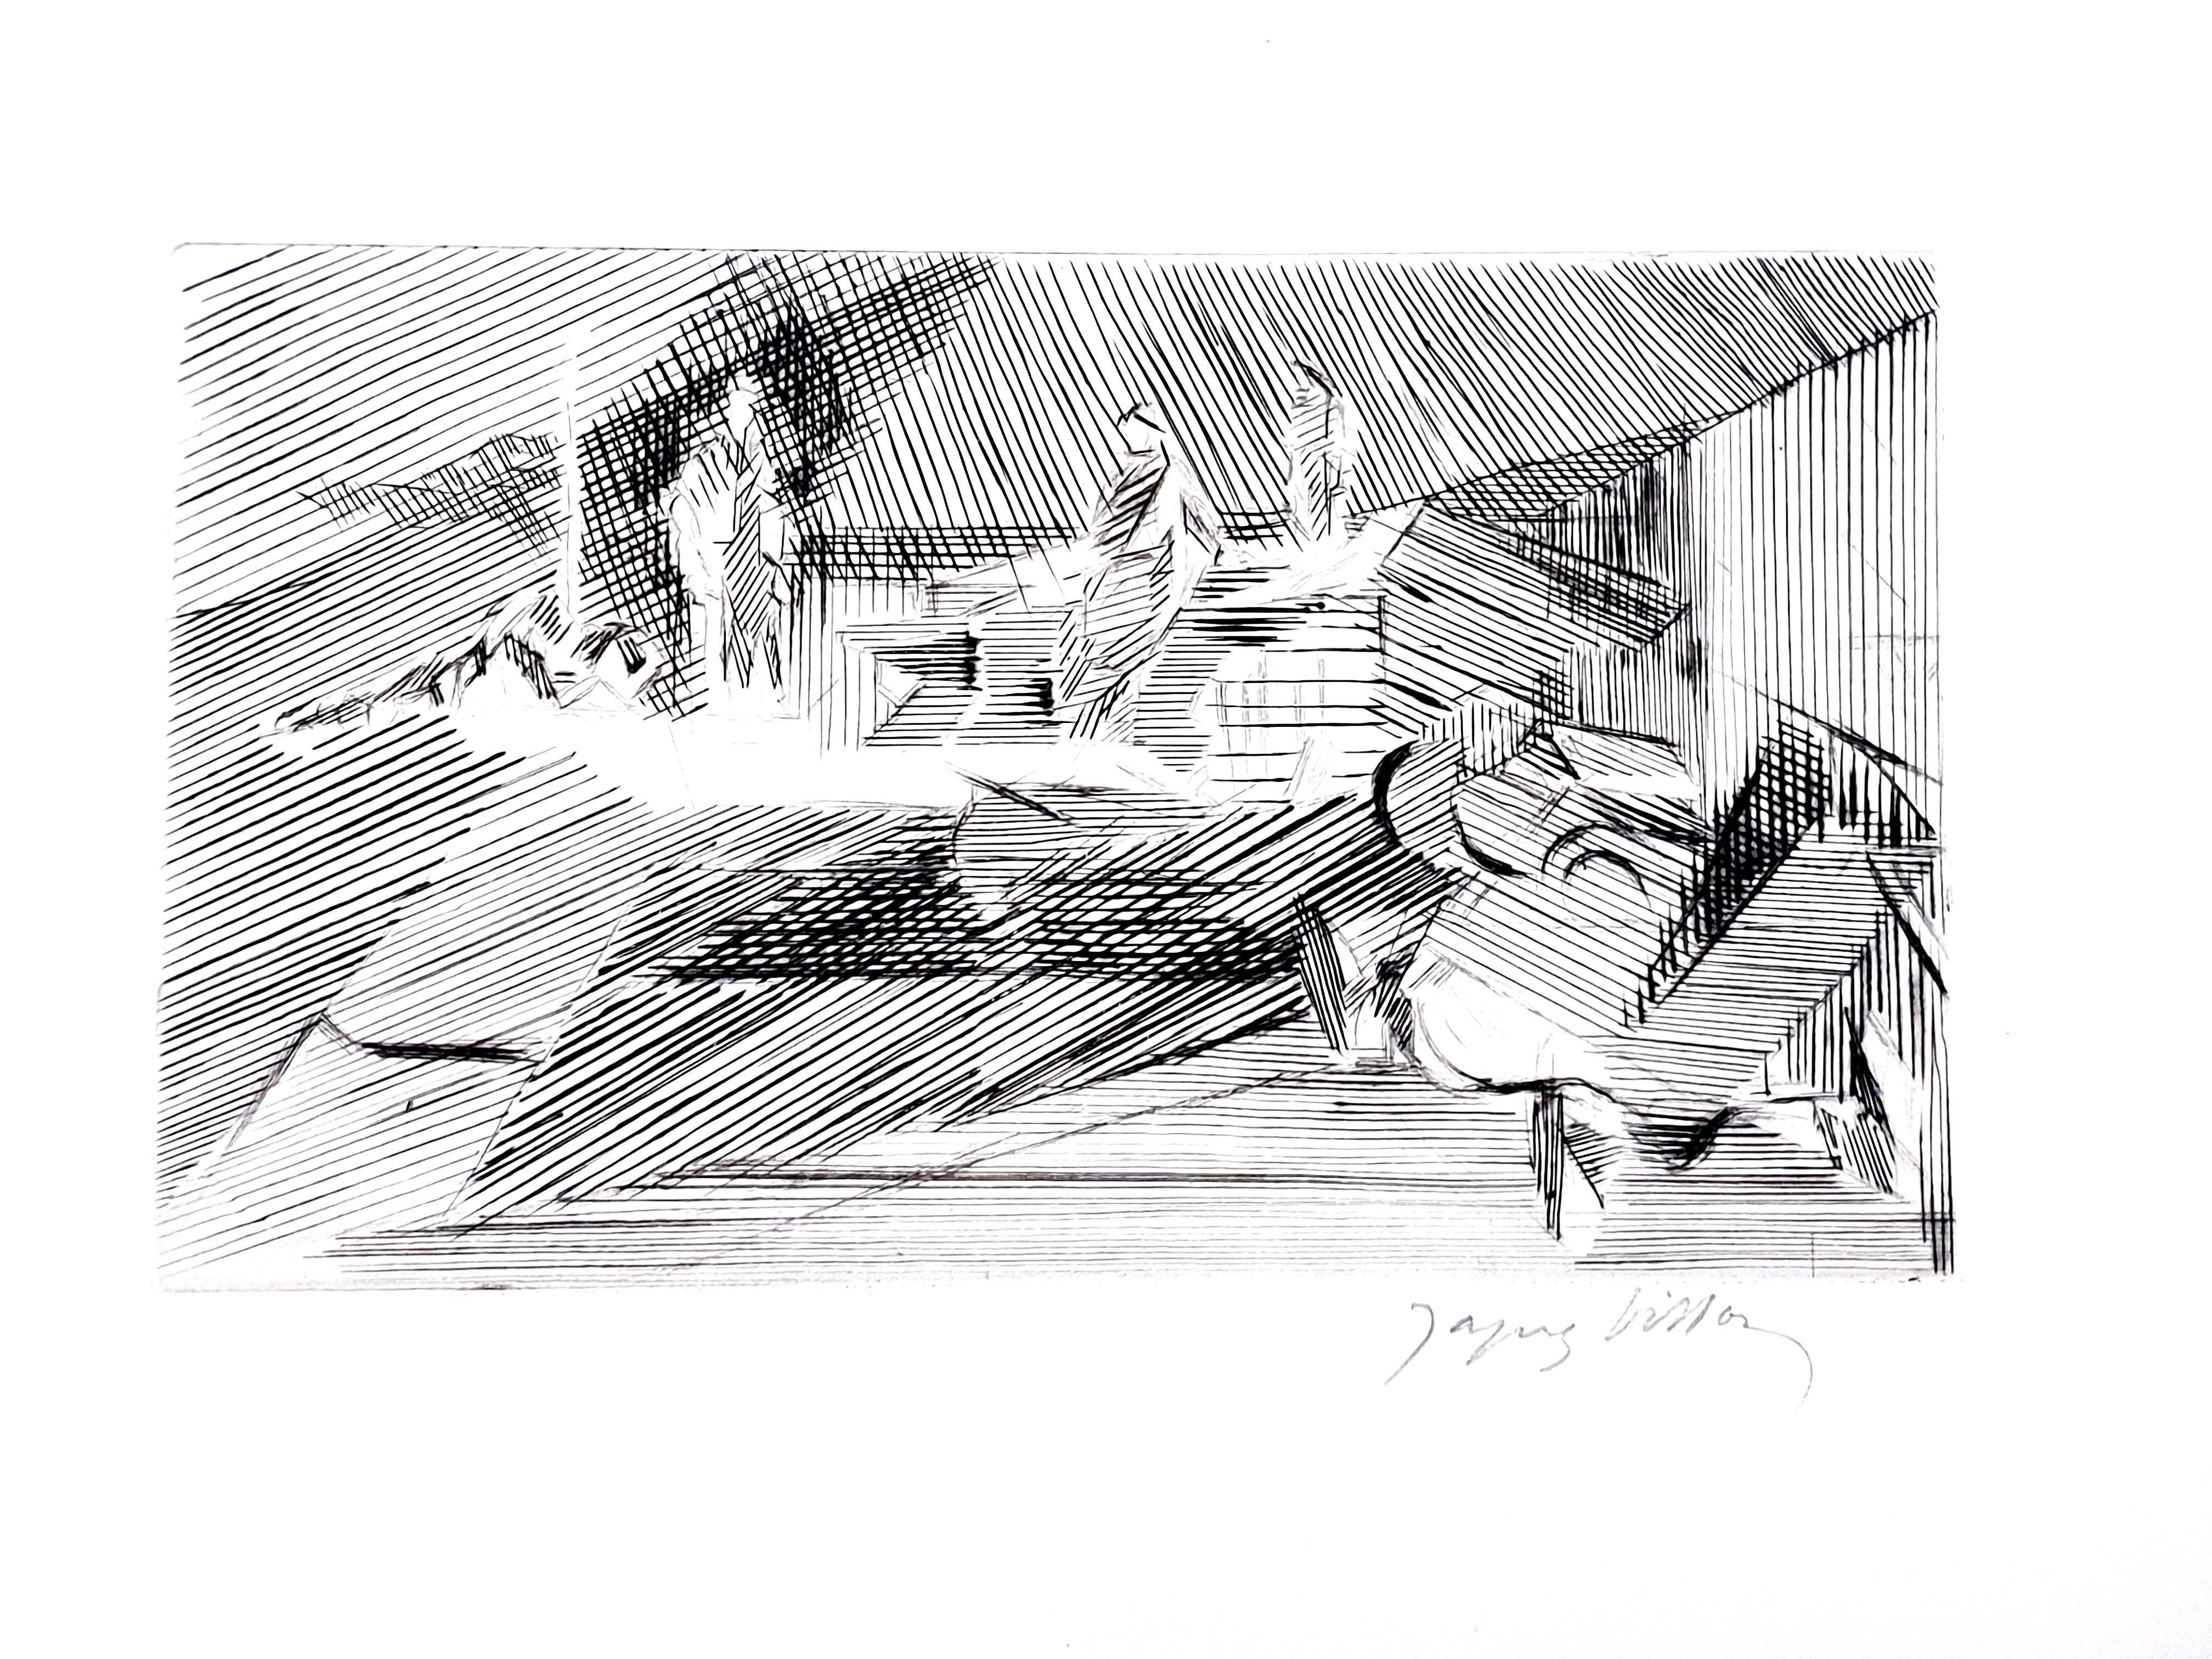 Jacques Villon - Paysage cubiste - Gravure originale
Circa 1950
Signé au crayon


Jacques Villon (1875 - 1963)

Jacques Villon est né Gaston Duchamp le 31 juillet 1875, à Damville, en Normandie. Sa famille jouit d'une réputation artistique